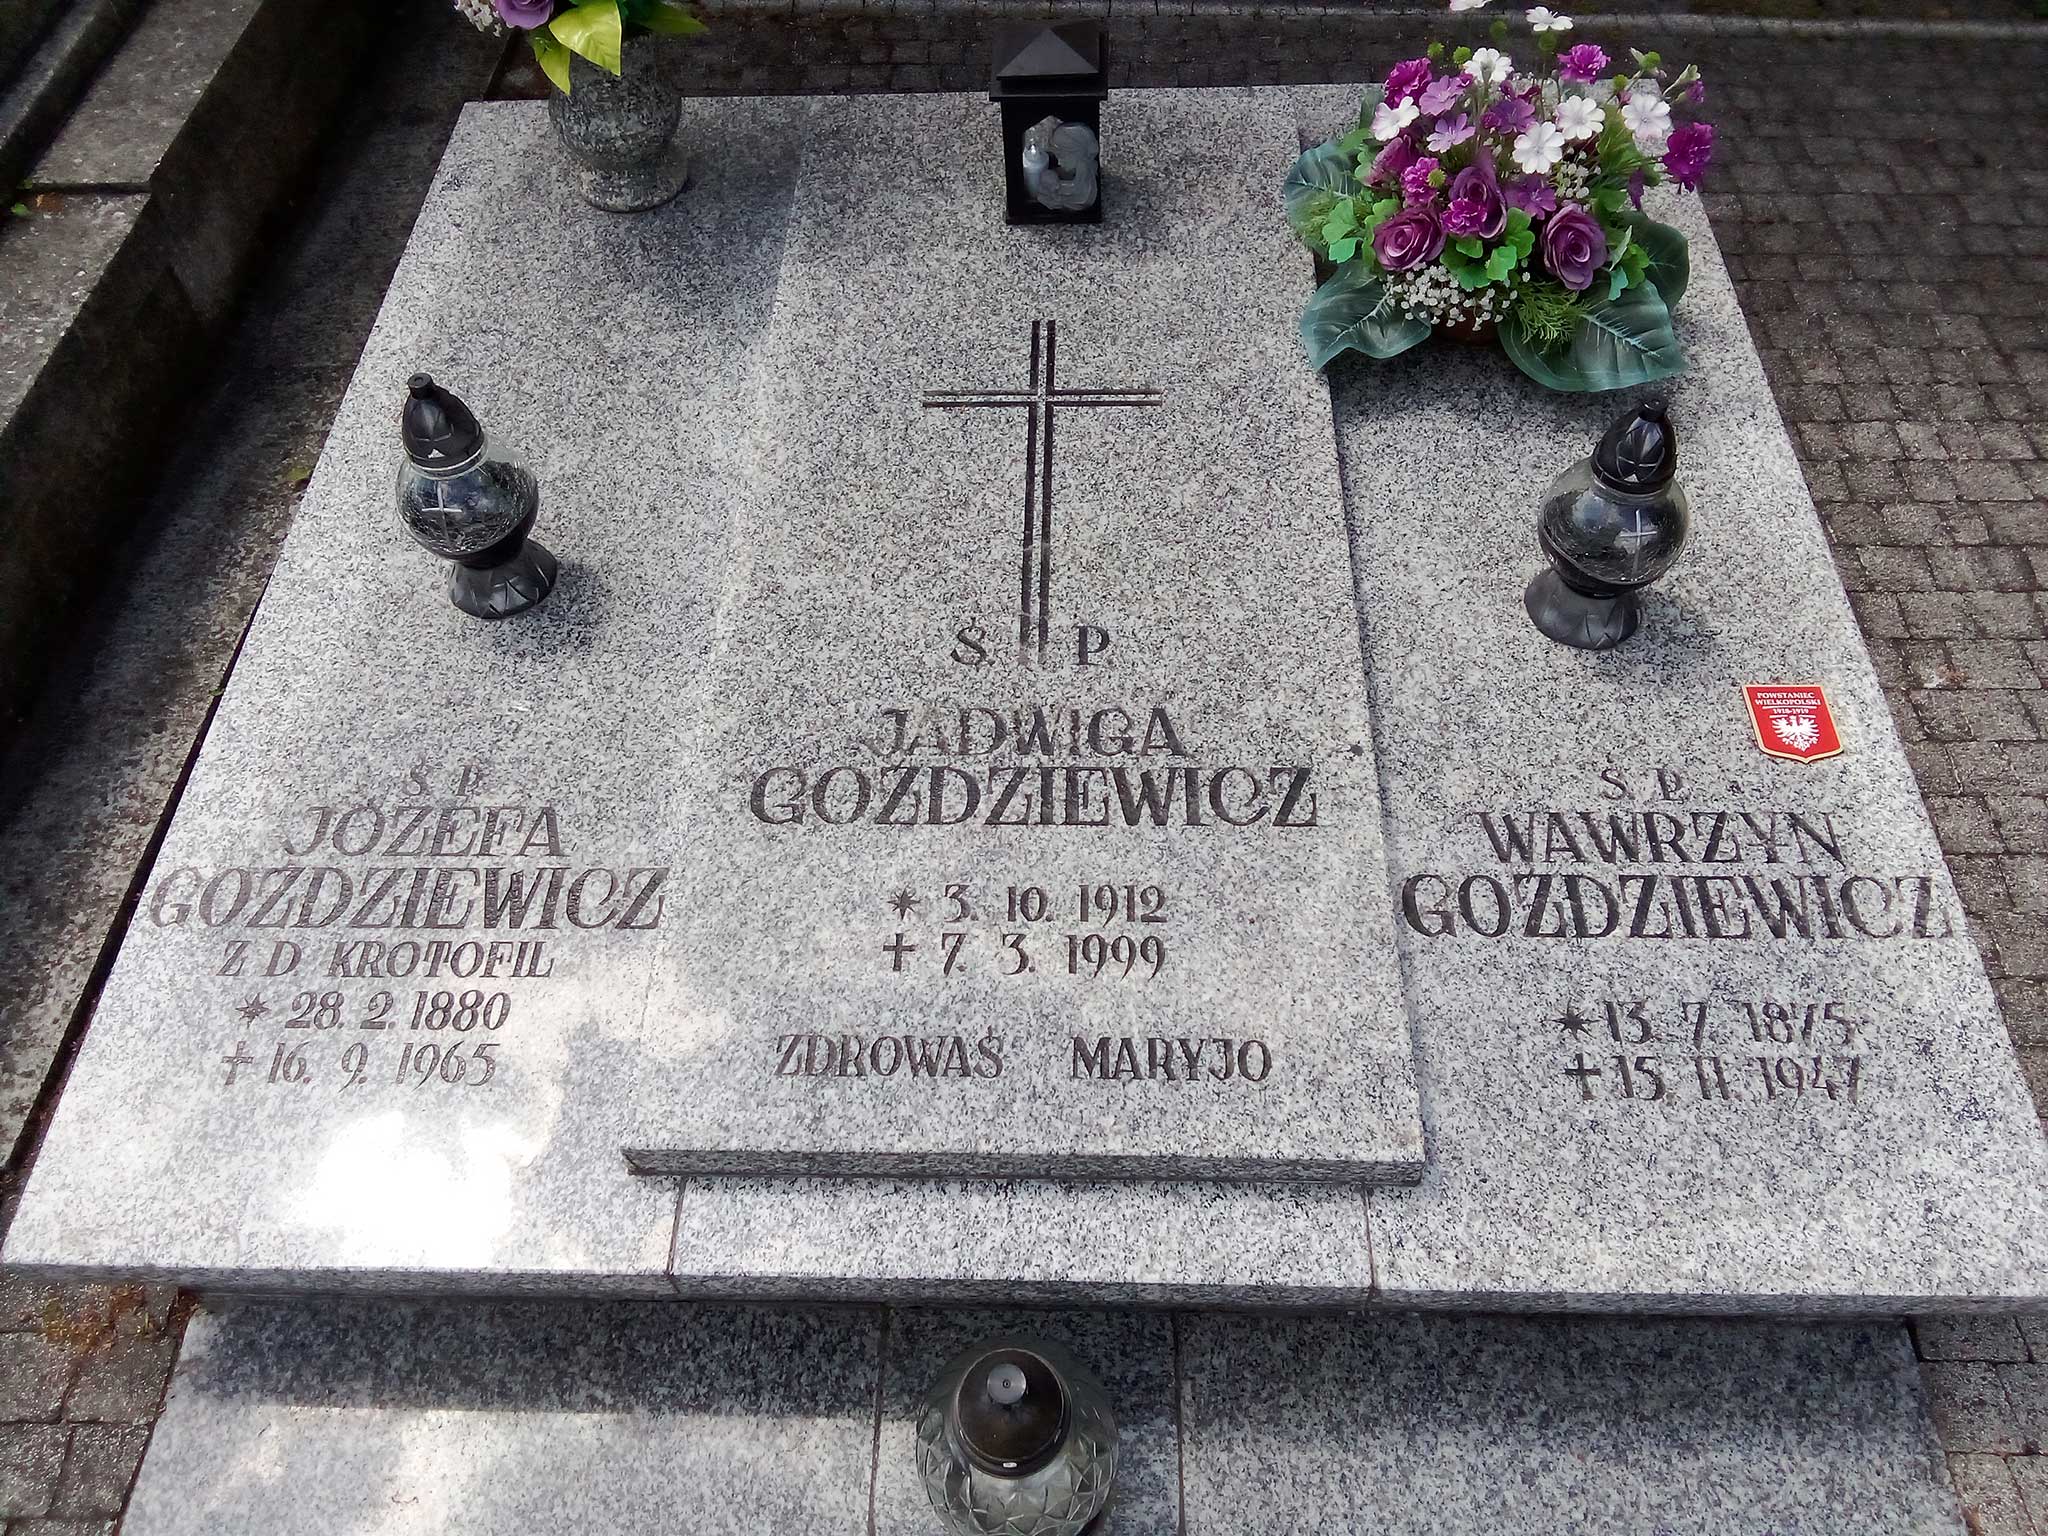 Wawrzyn Goździewicz - cmentarz parafialny we Wrześni (zdjęcie udostępnił Remigiusz Maćkowiak)